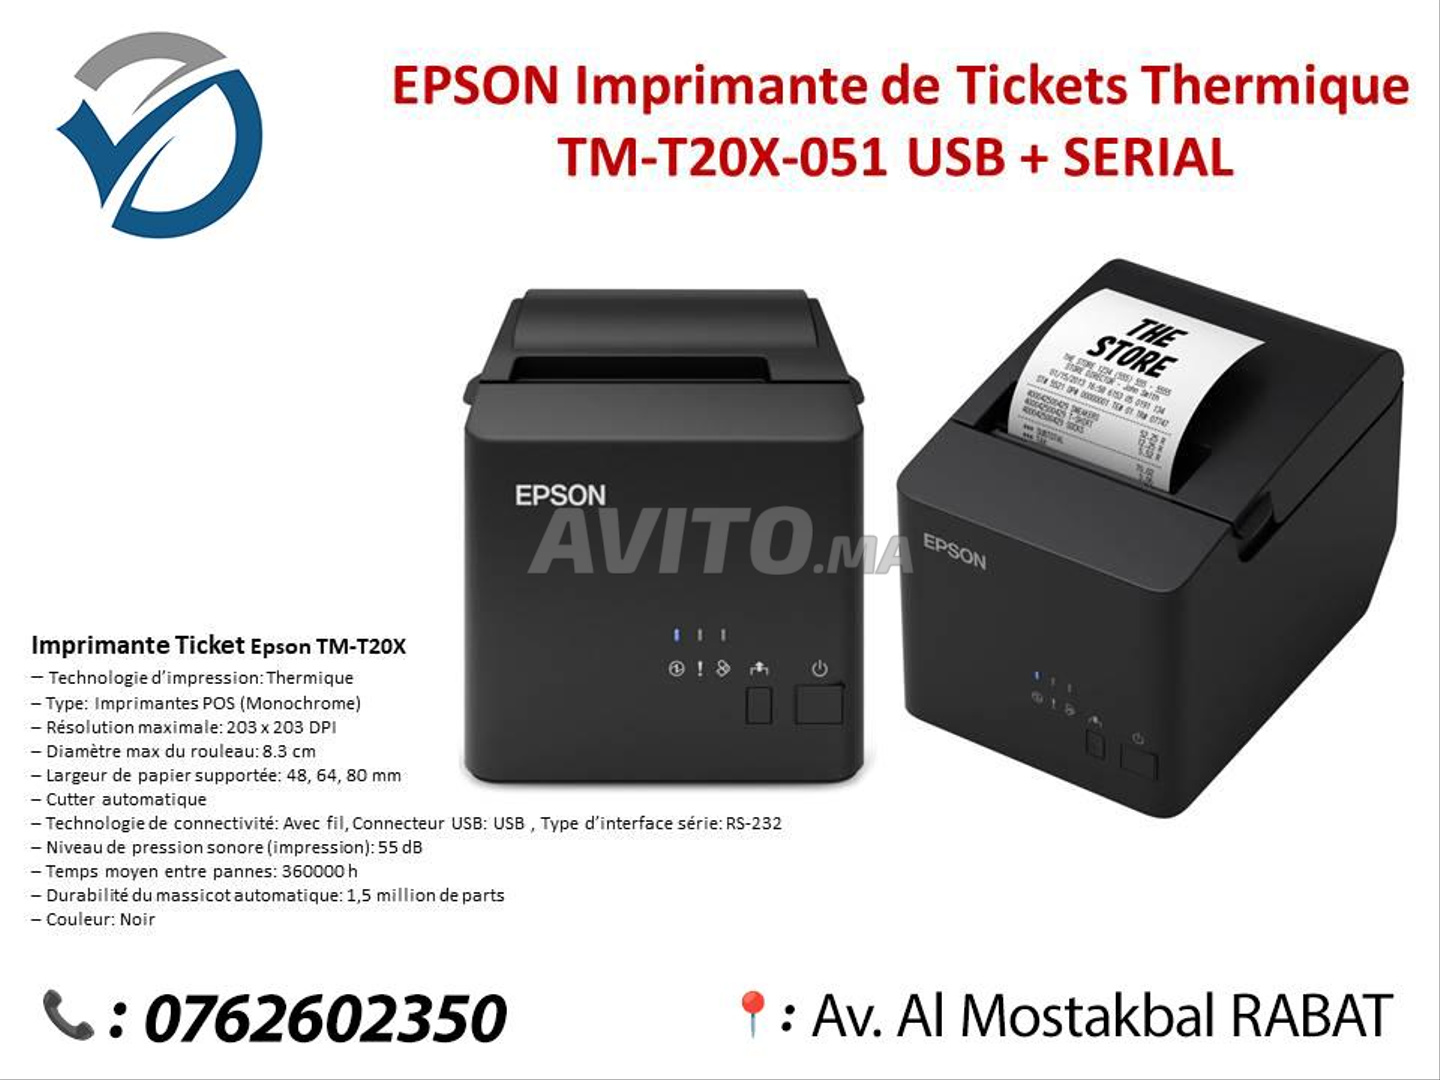 Imprimante Thermique Ticket de Caisse EPSON TM-T20X - Ethernet